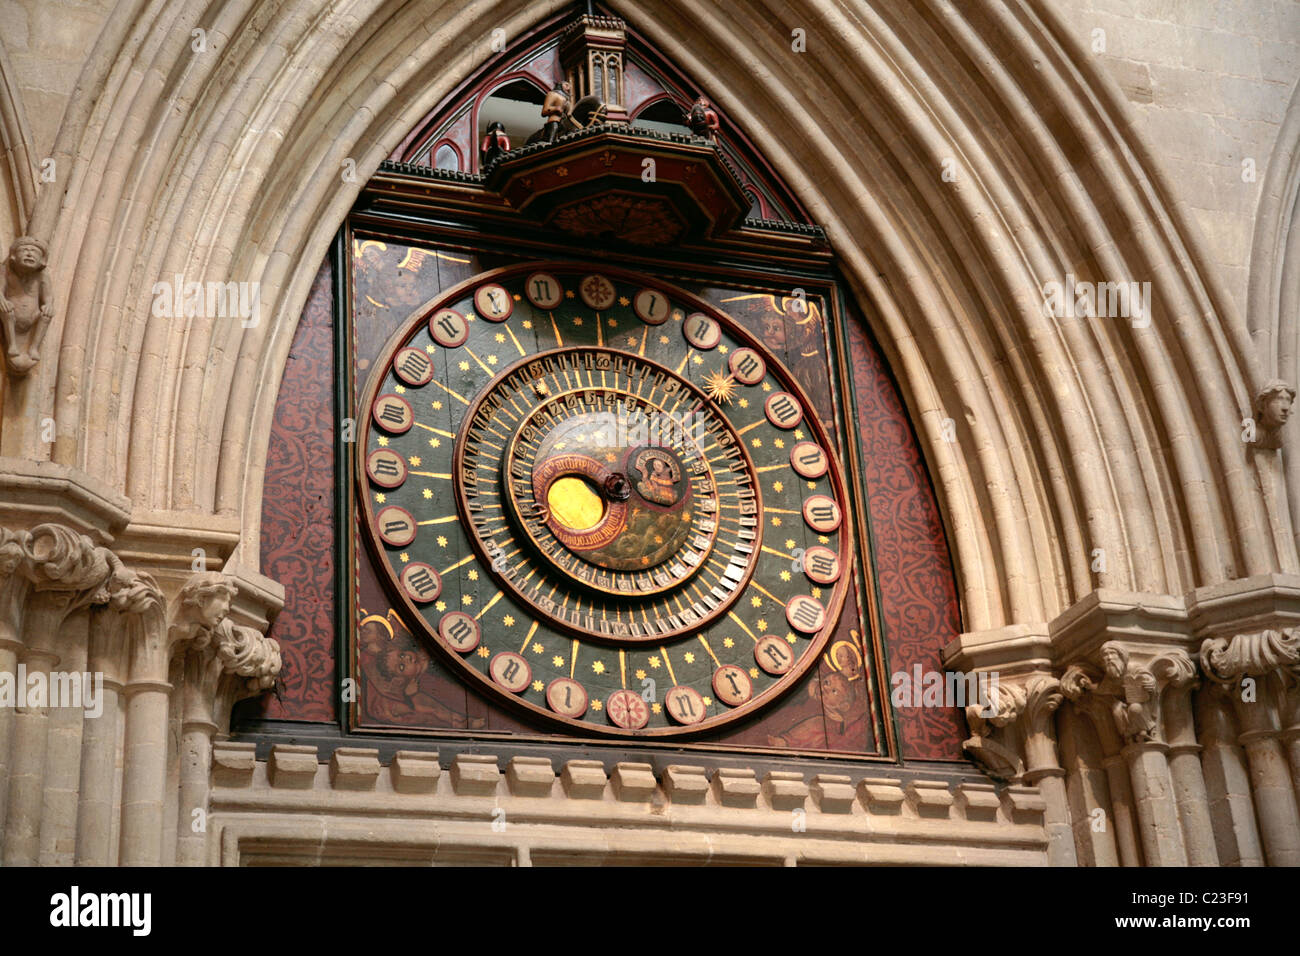 Die Brunnen, die astronomische Uhr, im Inneren der Kathedrale von Wells, Wells, Somerset, England. Stockfoto